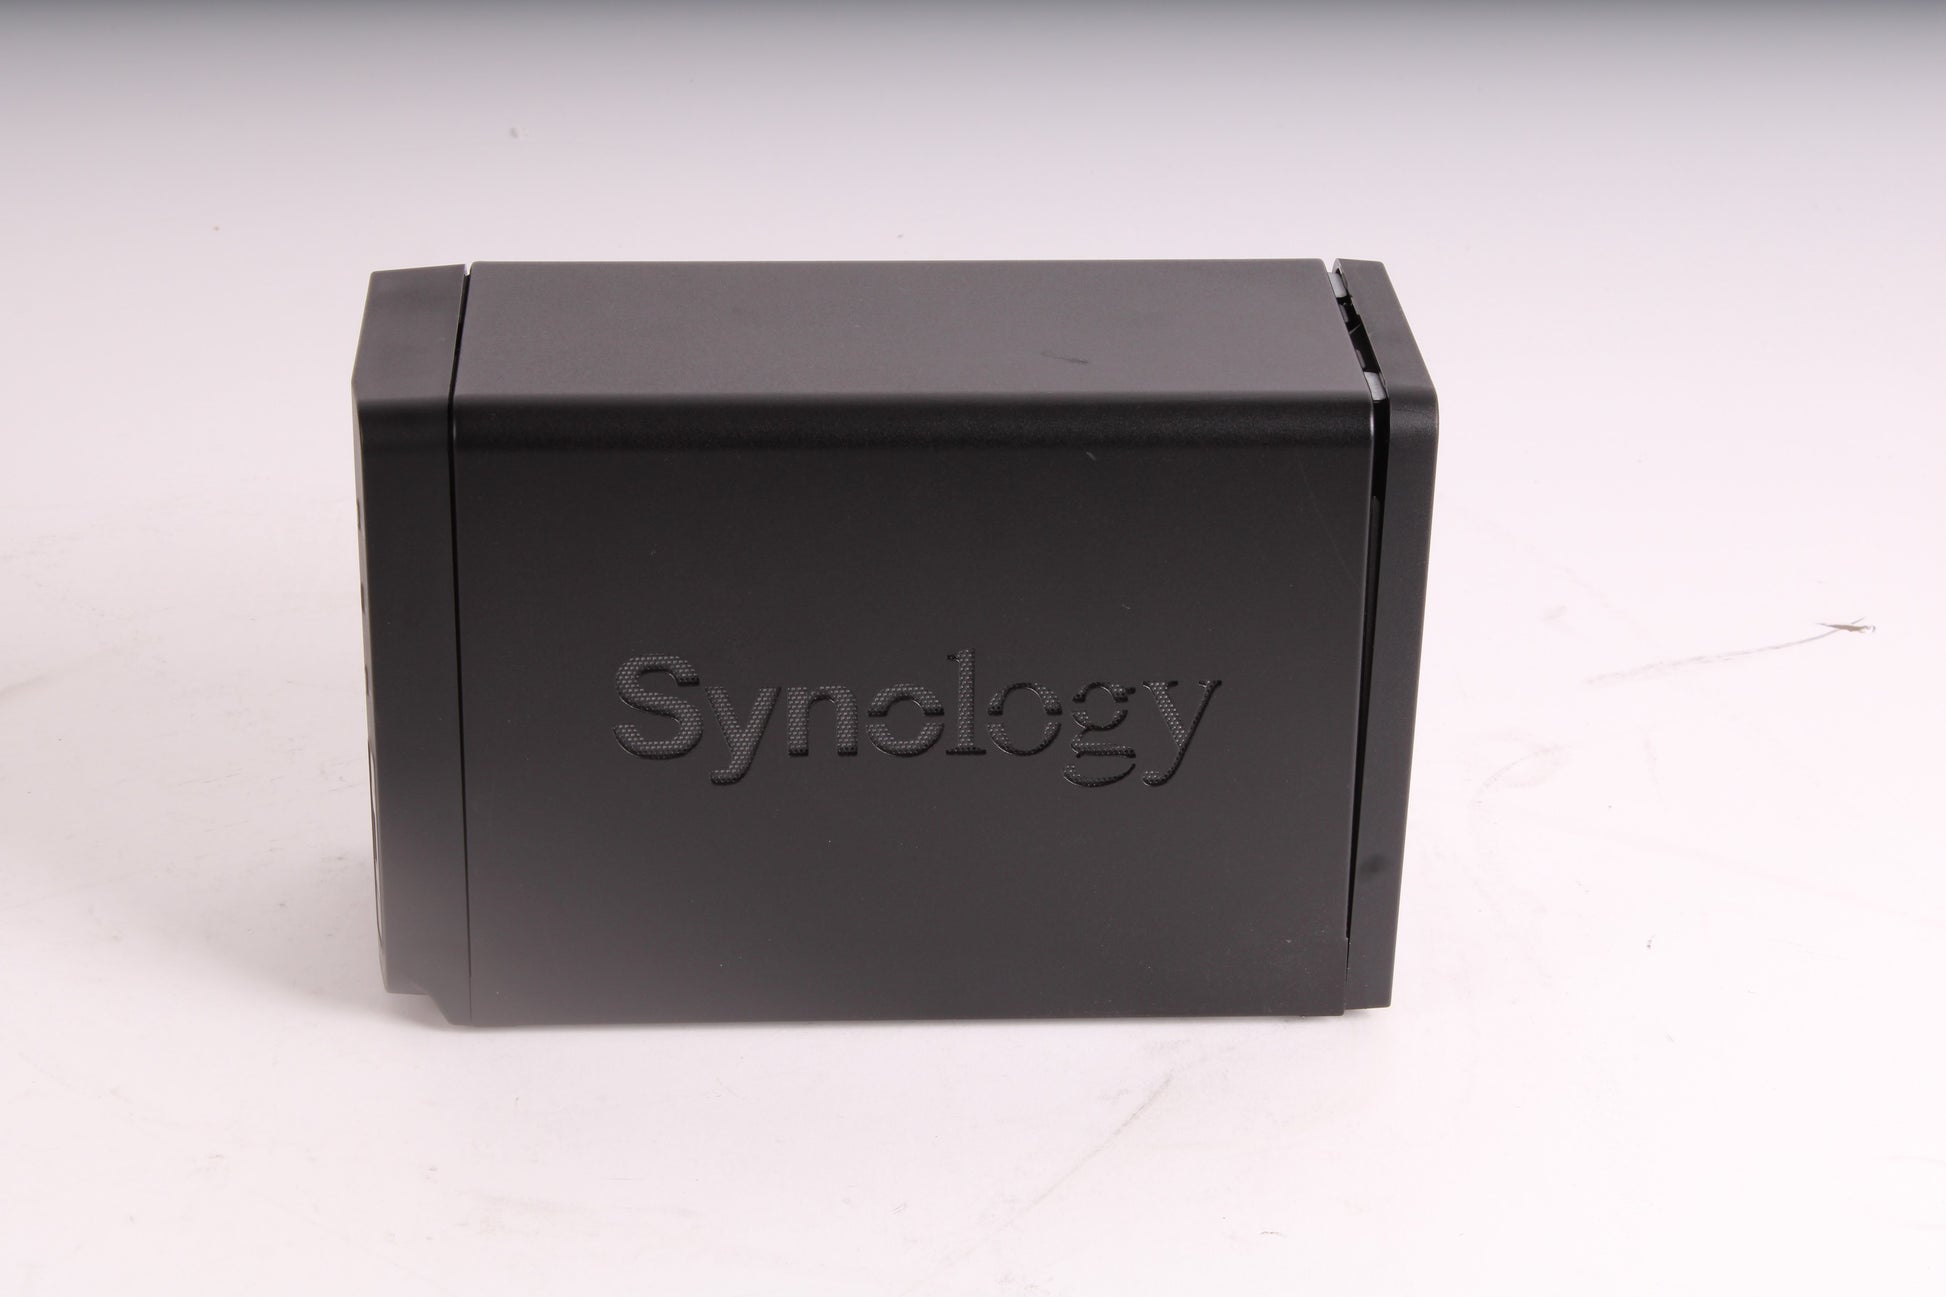 Synology DS713+ 2-Bay (4TB) NAS Storage Fair 2x Western Digital 2TB  WD20EFRX HDD